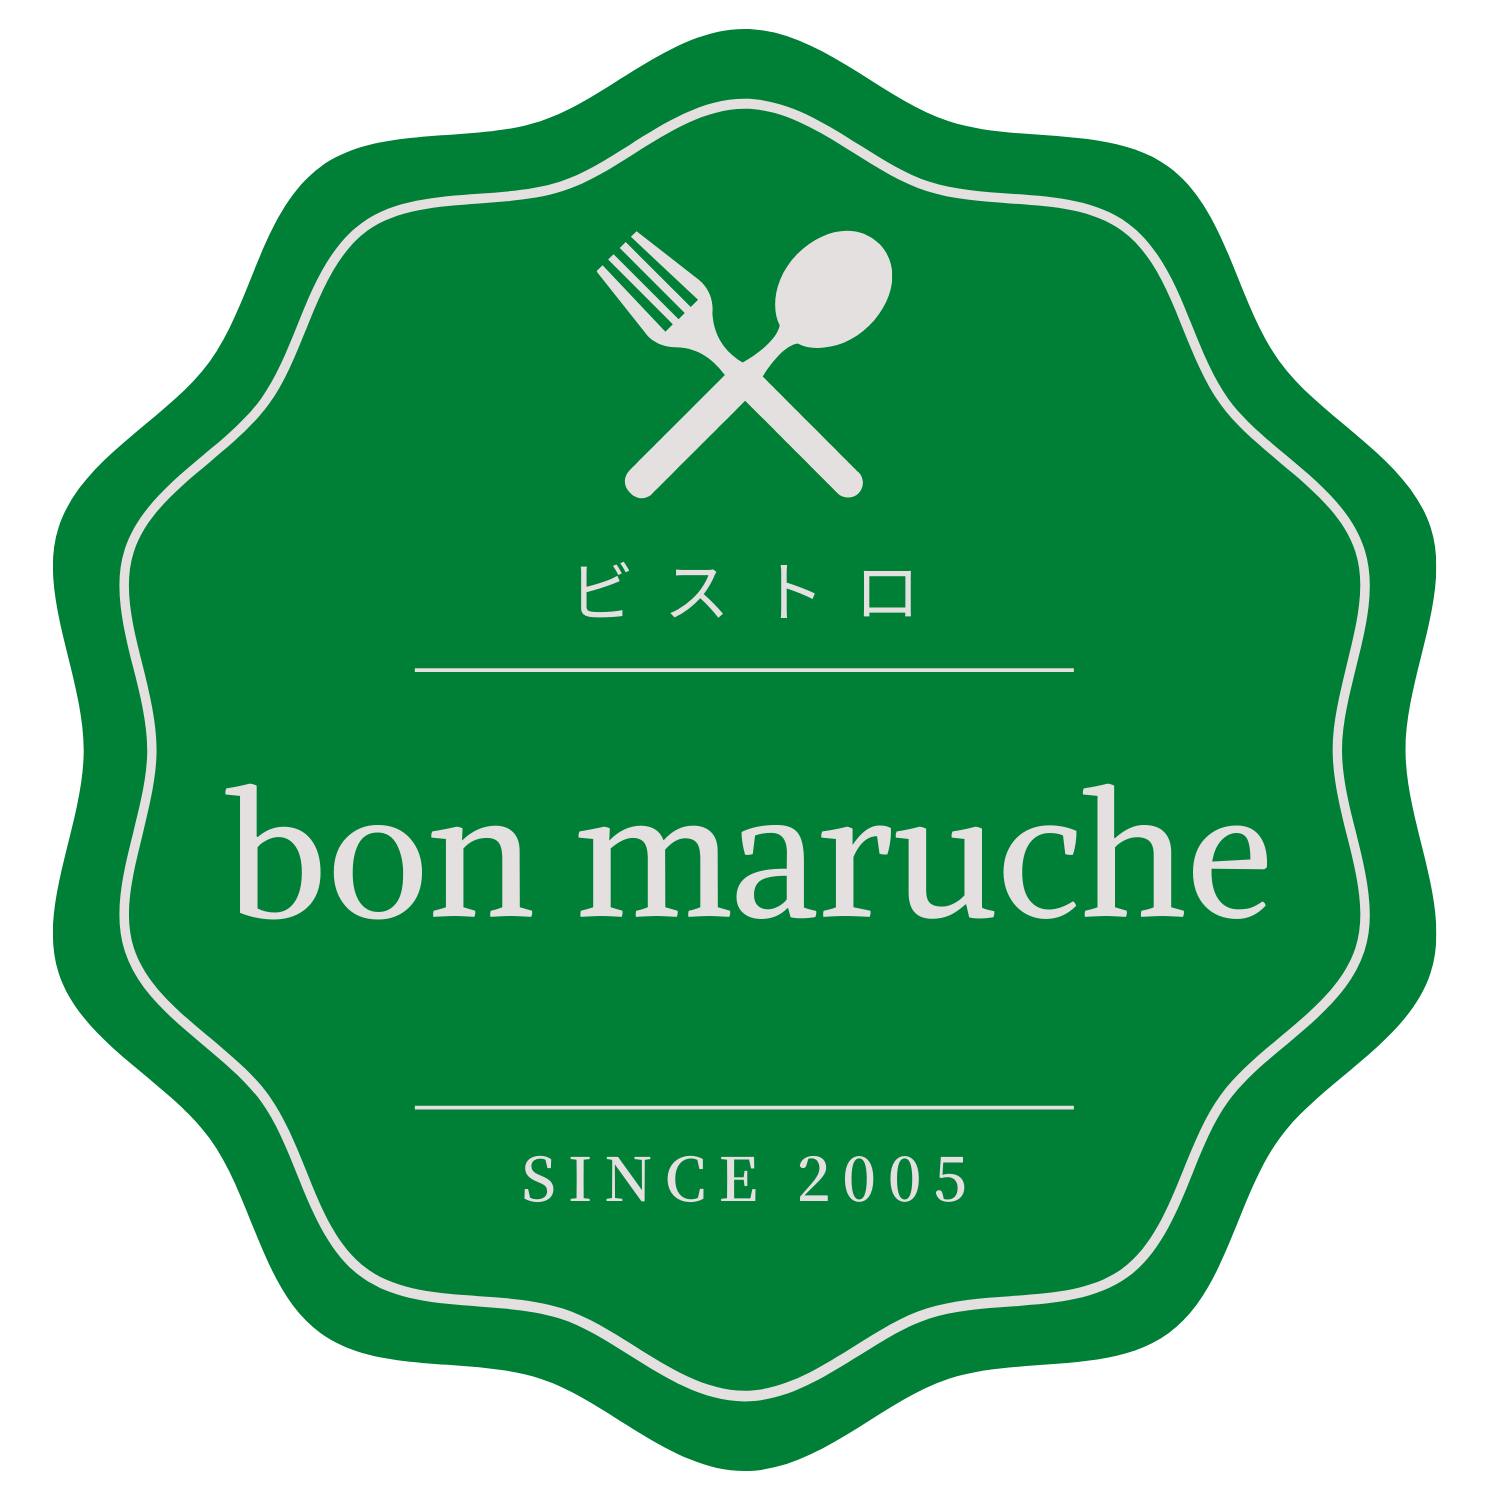 【公式】ビストロ bon marche -ボンマルシェ-【旭川市】